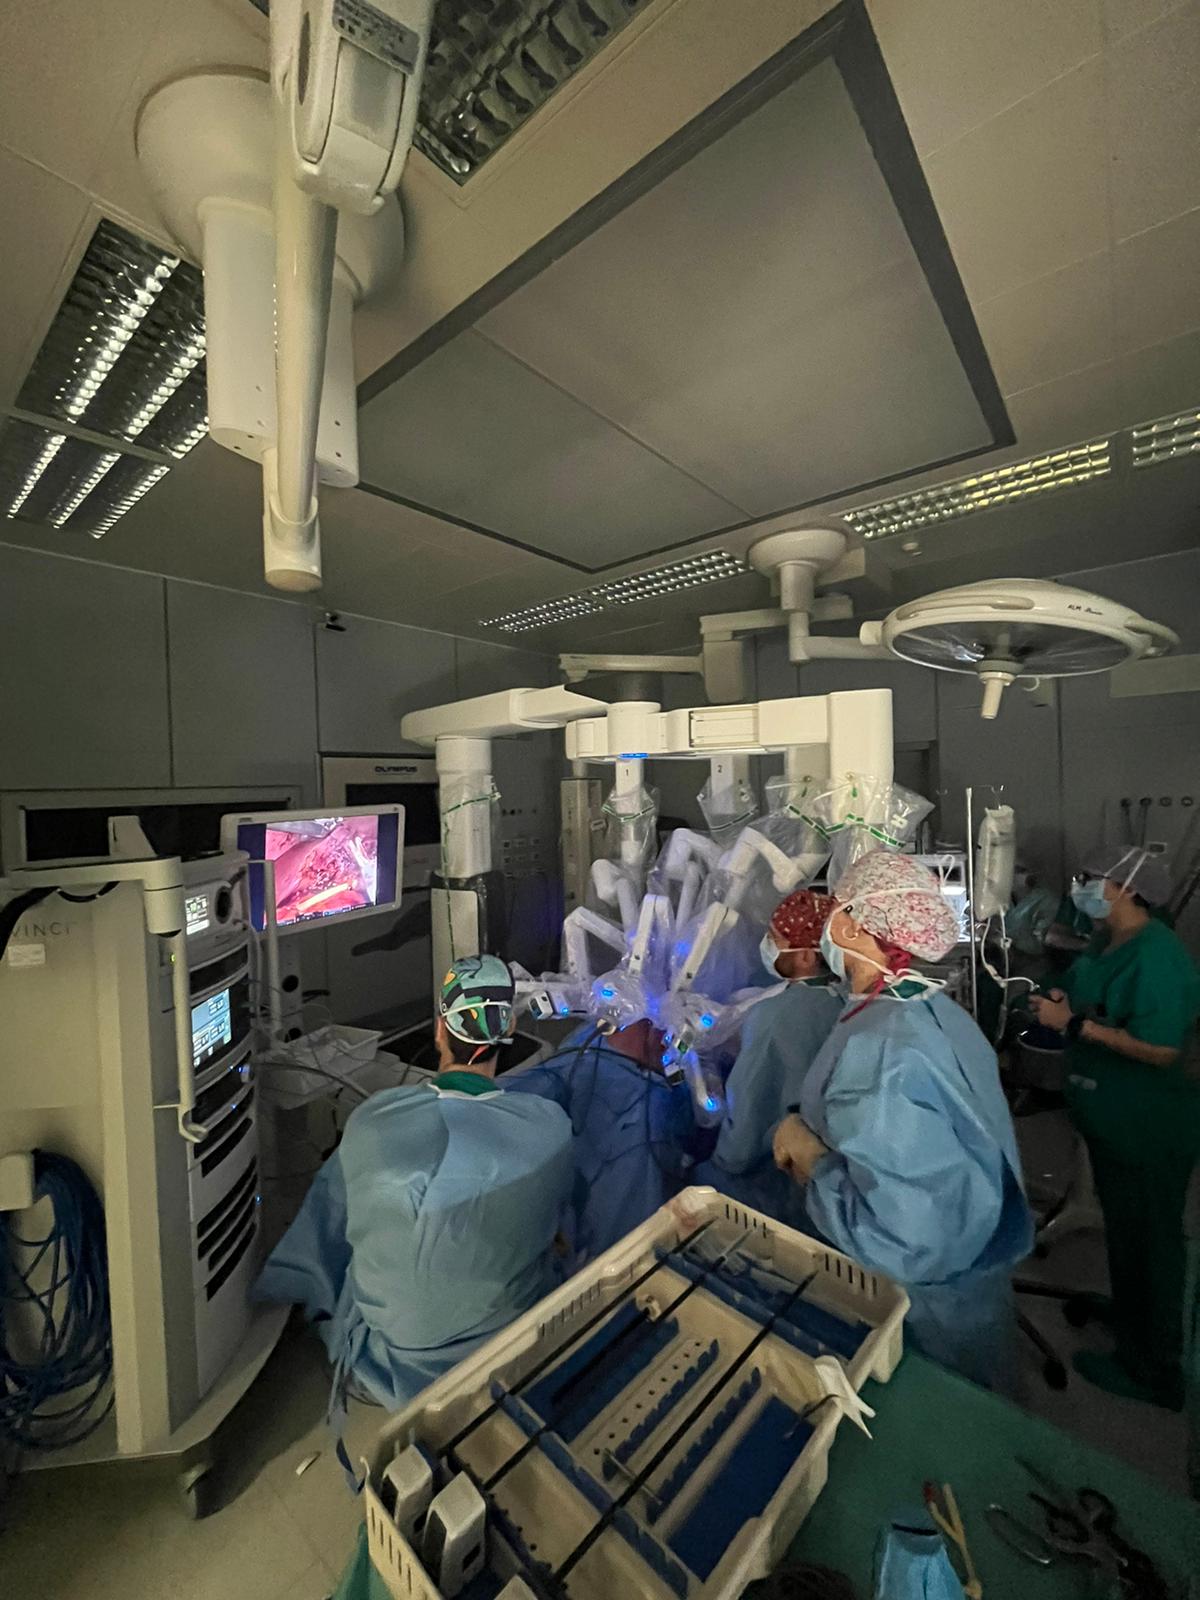  Importanti evoluzioni nell'ambito della Chirurgia epato-biliare all'Ospedale di Circolo: primo intervento eseguito con tecnica robotica 